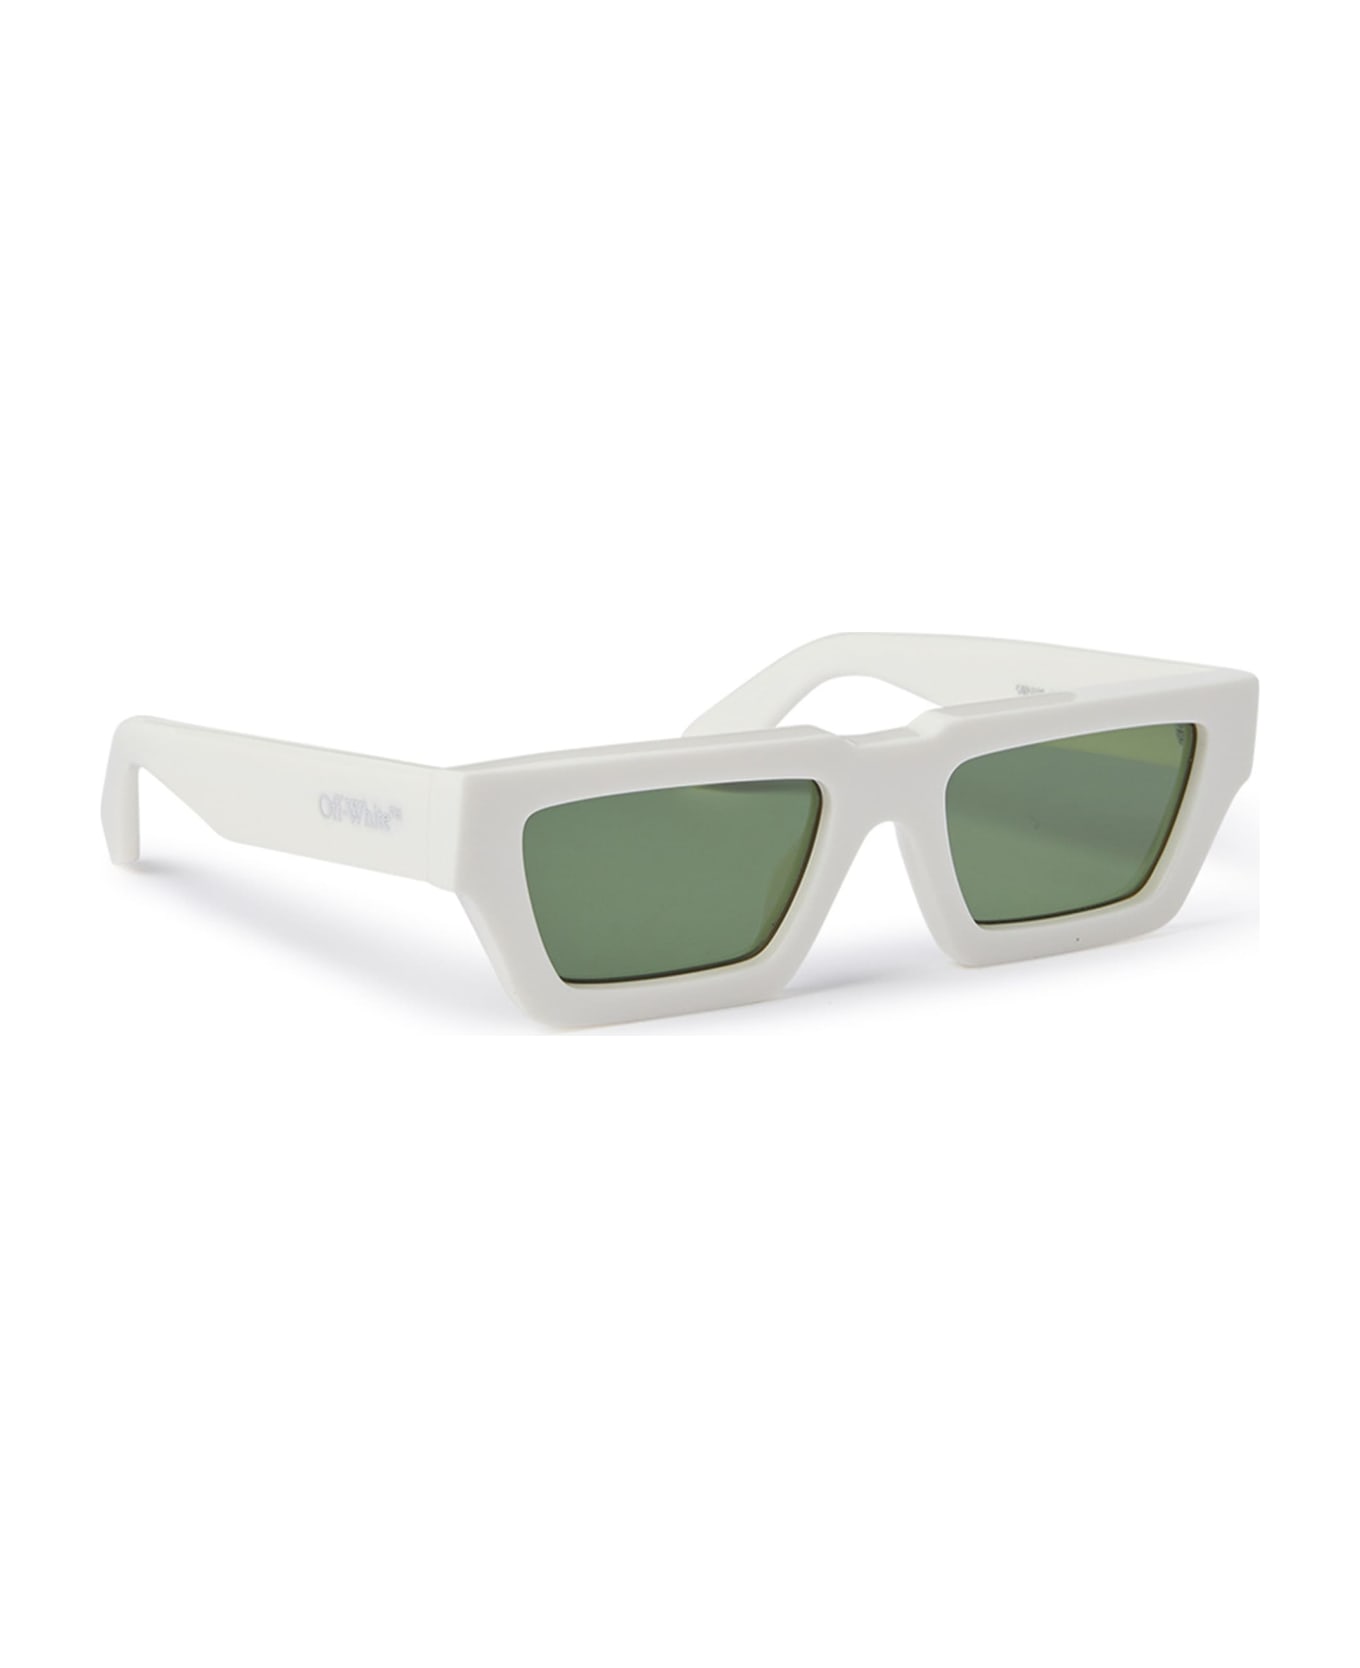 Off-White Manchester - White / Green Sunglasses - White